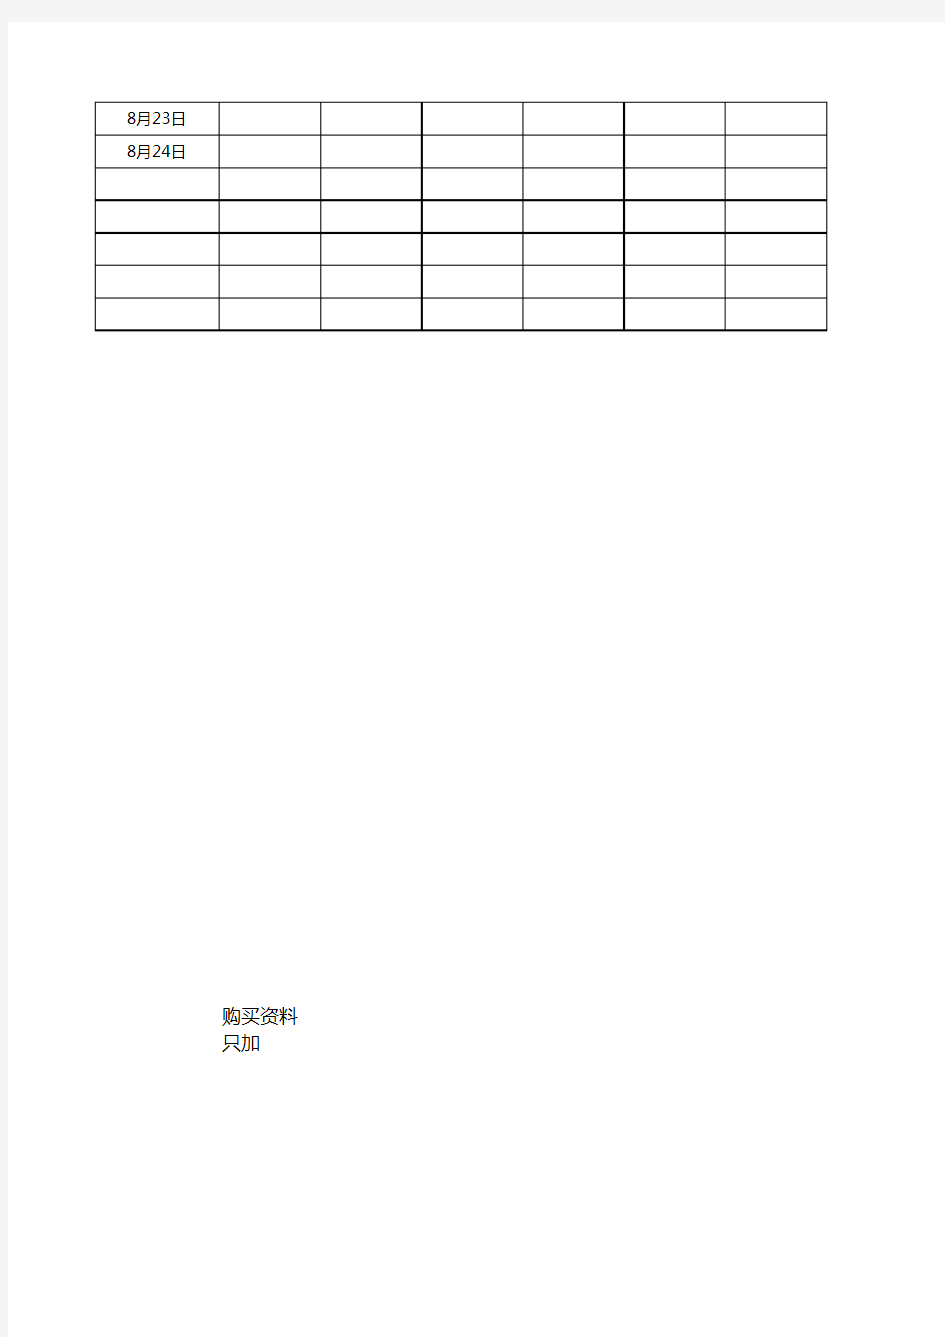 数据-12月店铺月度运营日报表-电商天猫淘宝运营统计计划表格